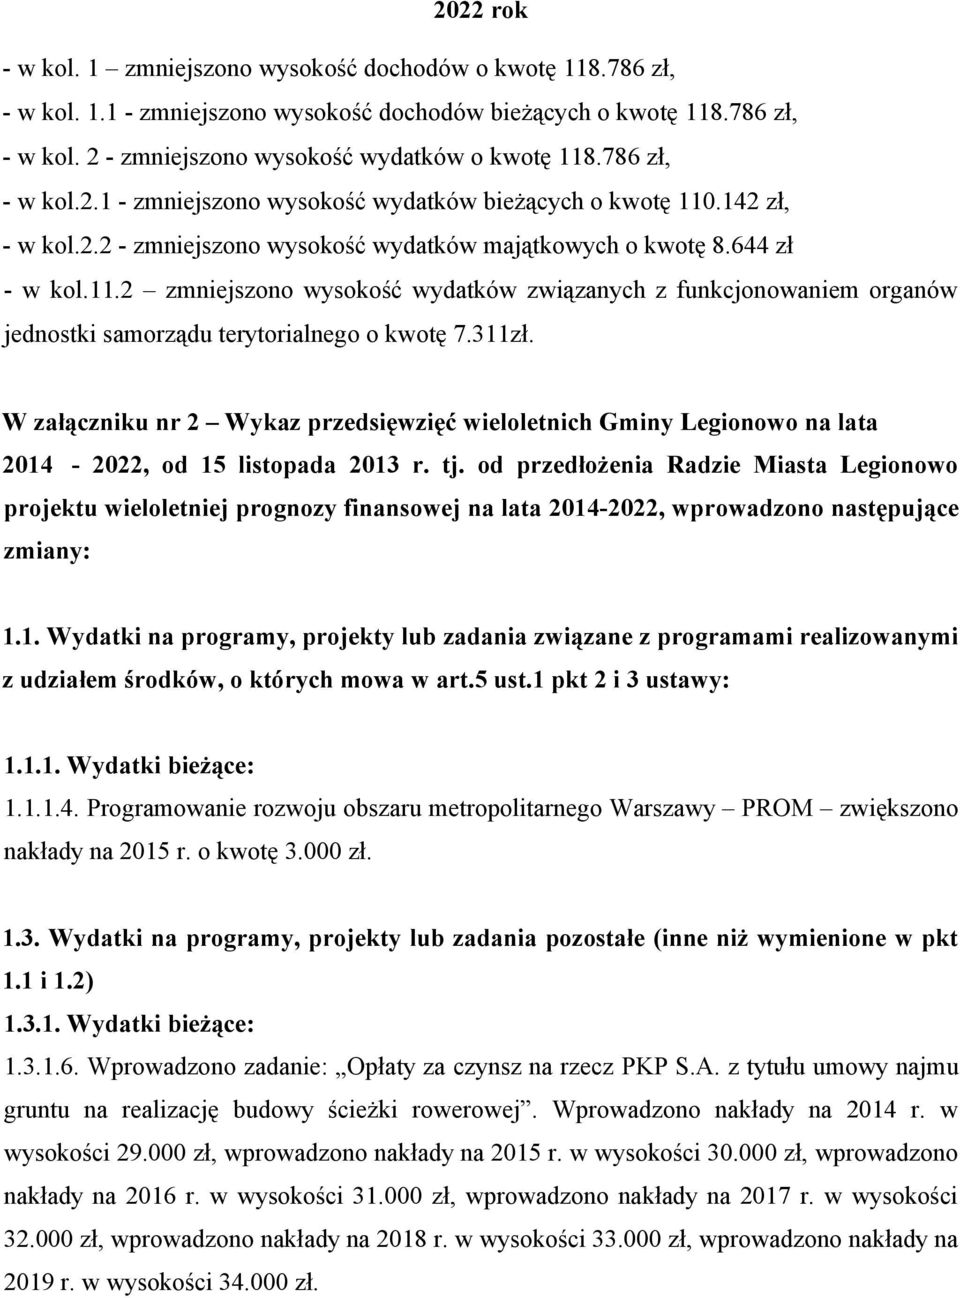 311zł. W załączniku nr 2 Wykaz przedsięwzięć wieloletnich Gminy Legionowo na lata 2014-2022, od 15 listopada 2013 r. tj.